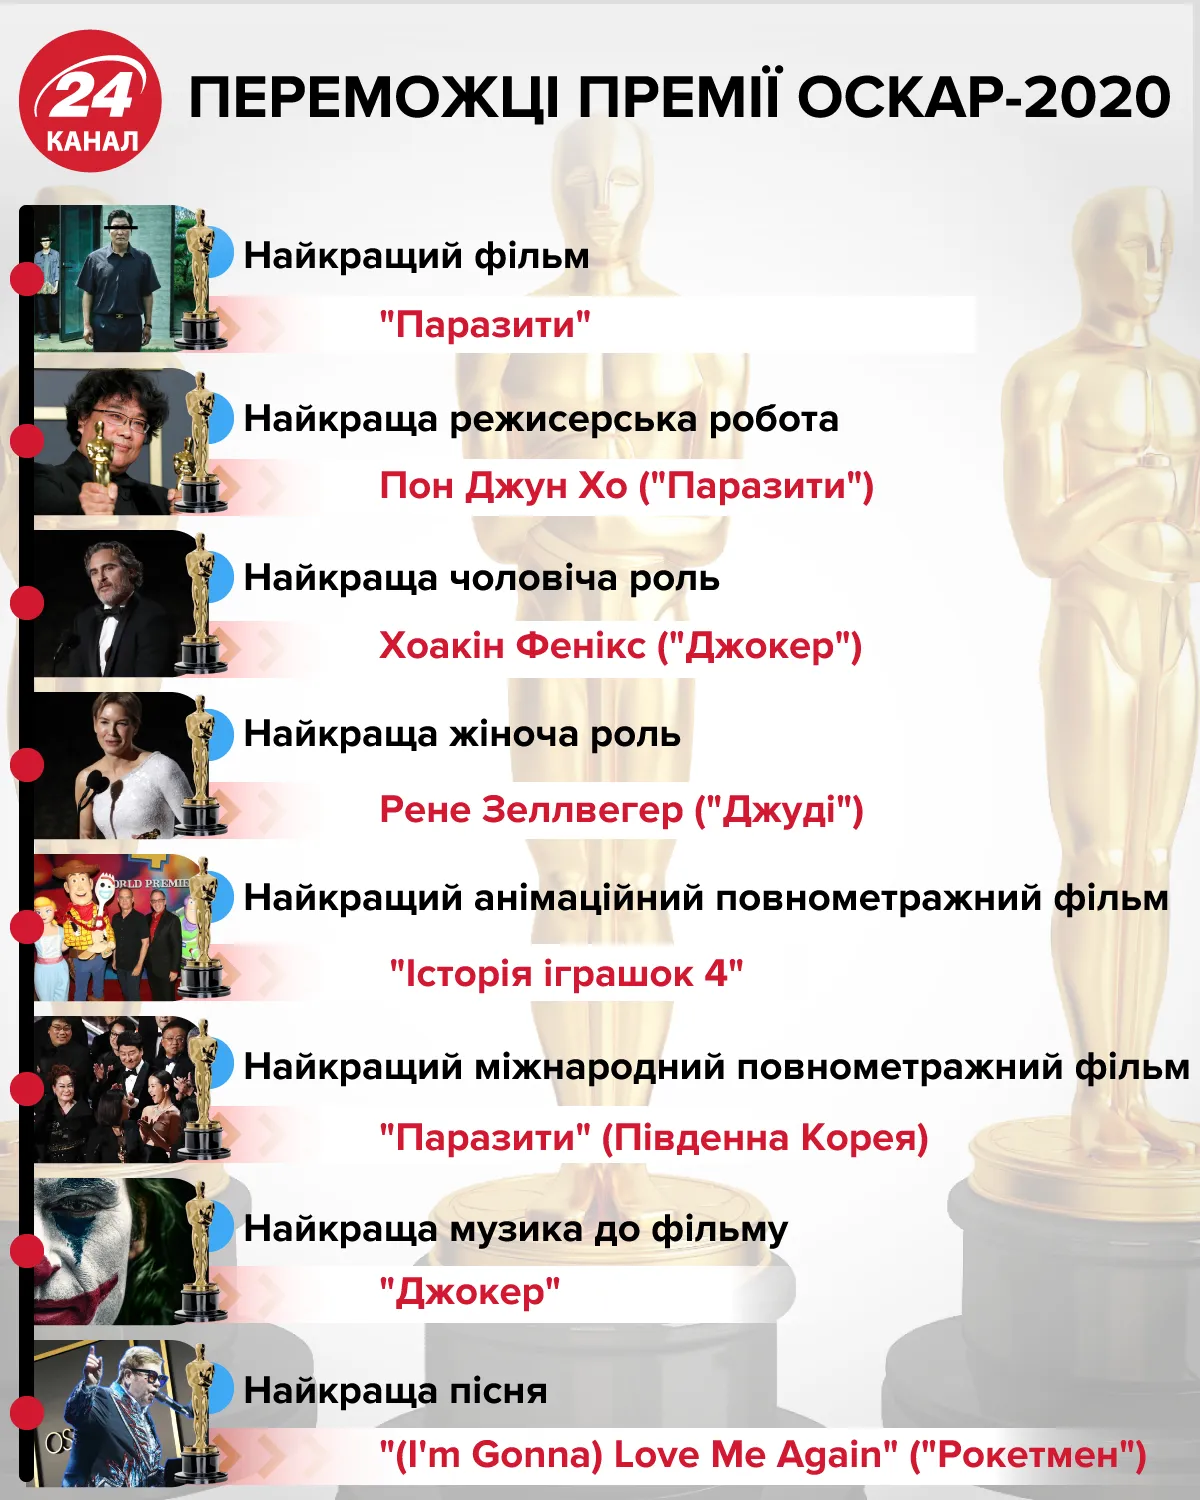 Переможці Оскар 2020